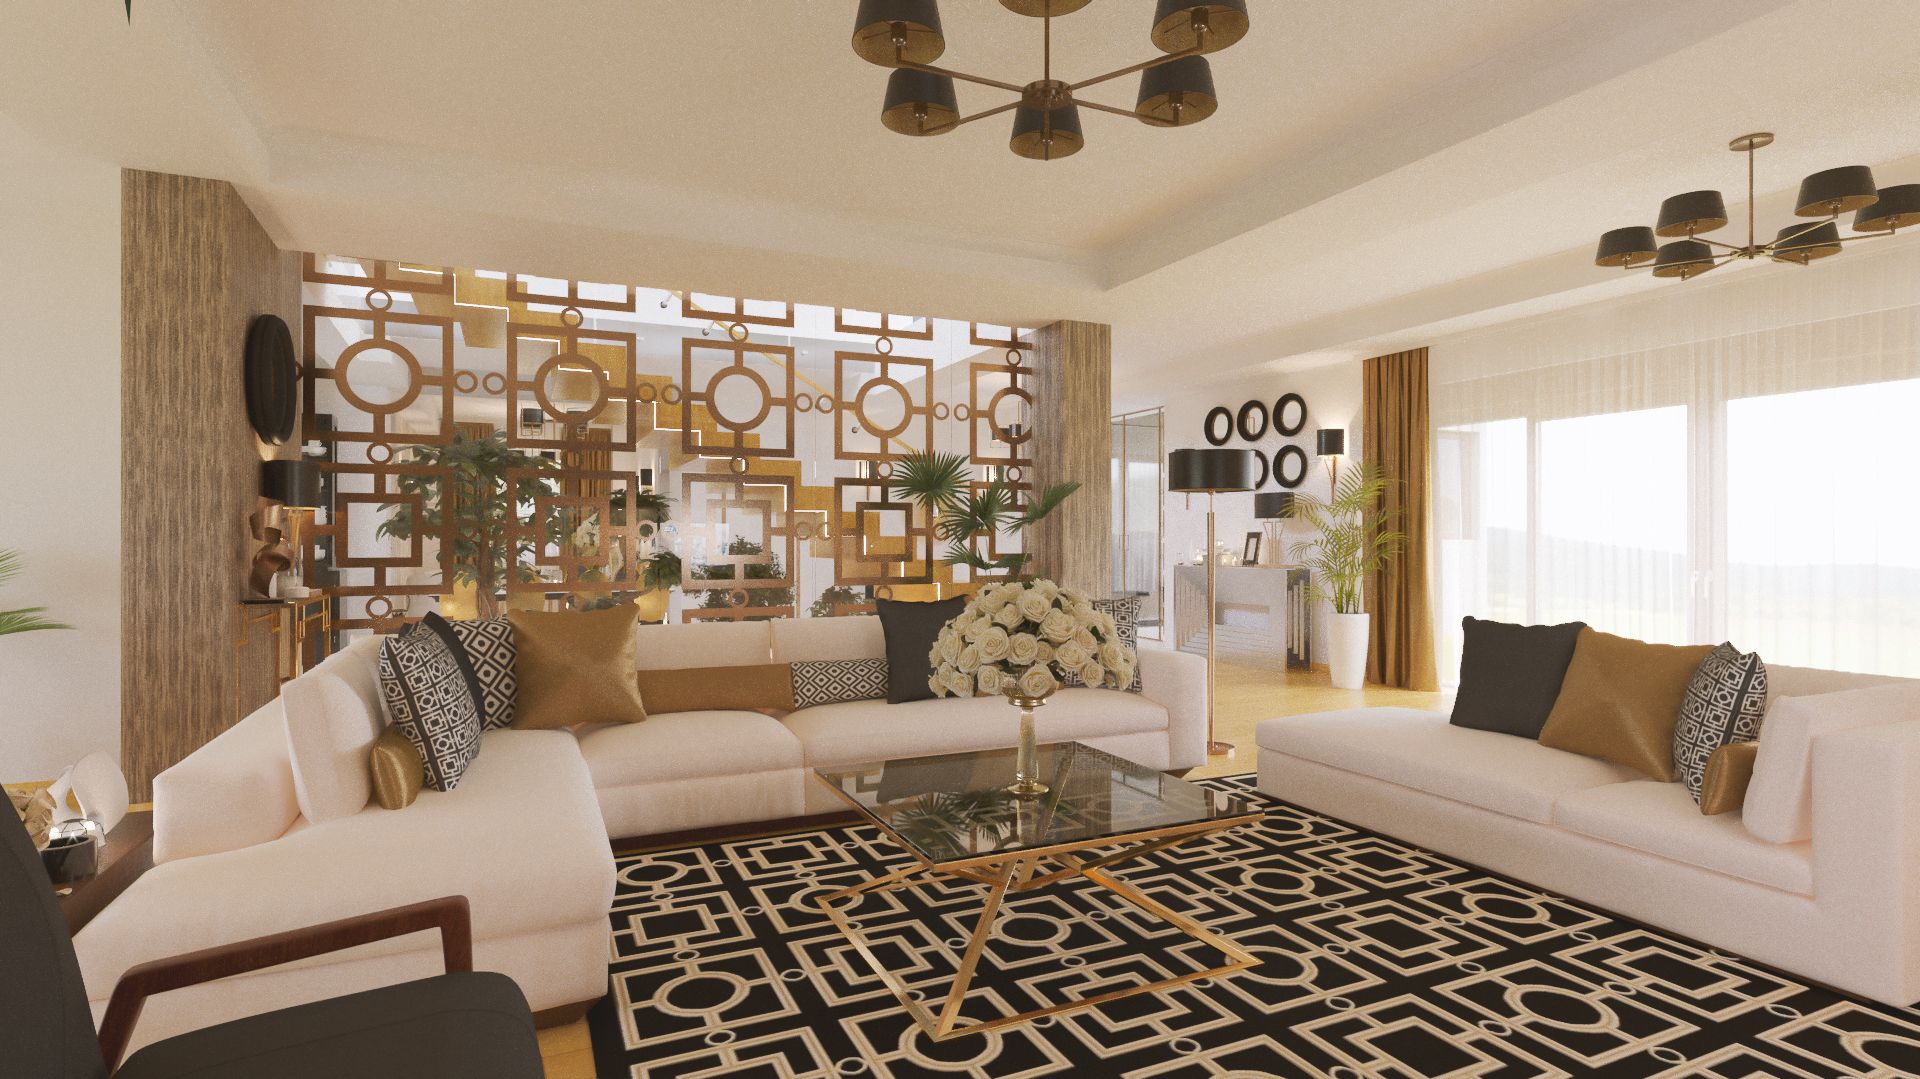 Sufragerie cu canapele albe, elemente decorative, perete cu figuri geometrice din metal auriu